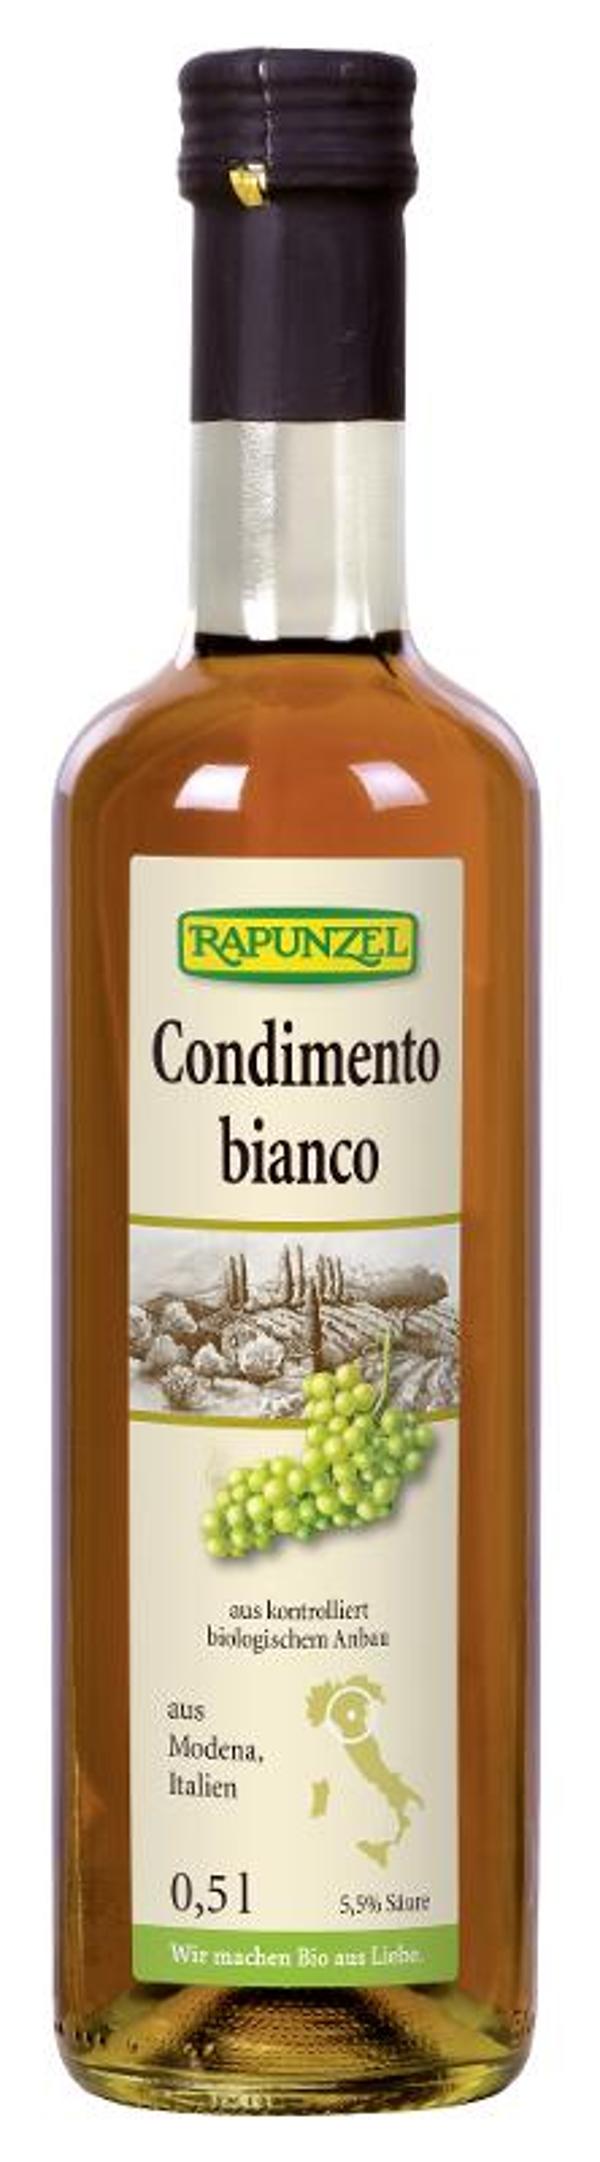 Produktfoto zu Condimento Bianco aus Modena